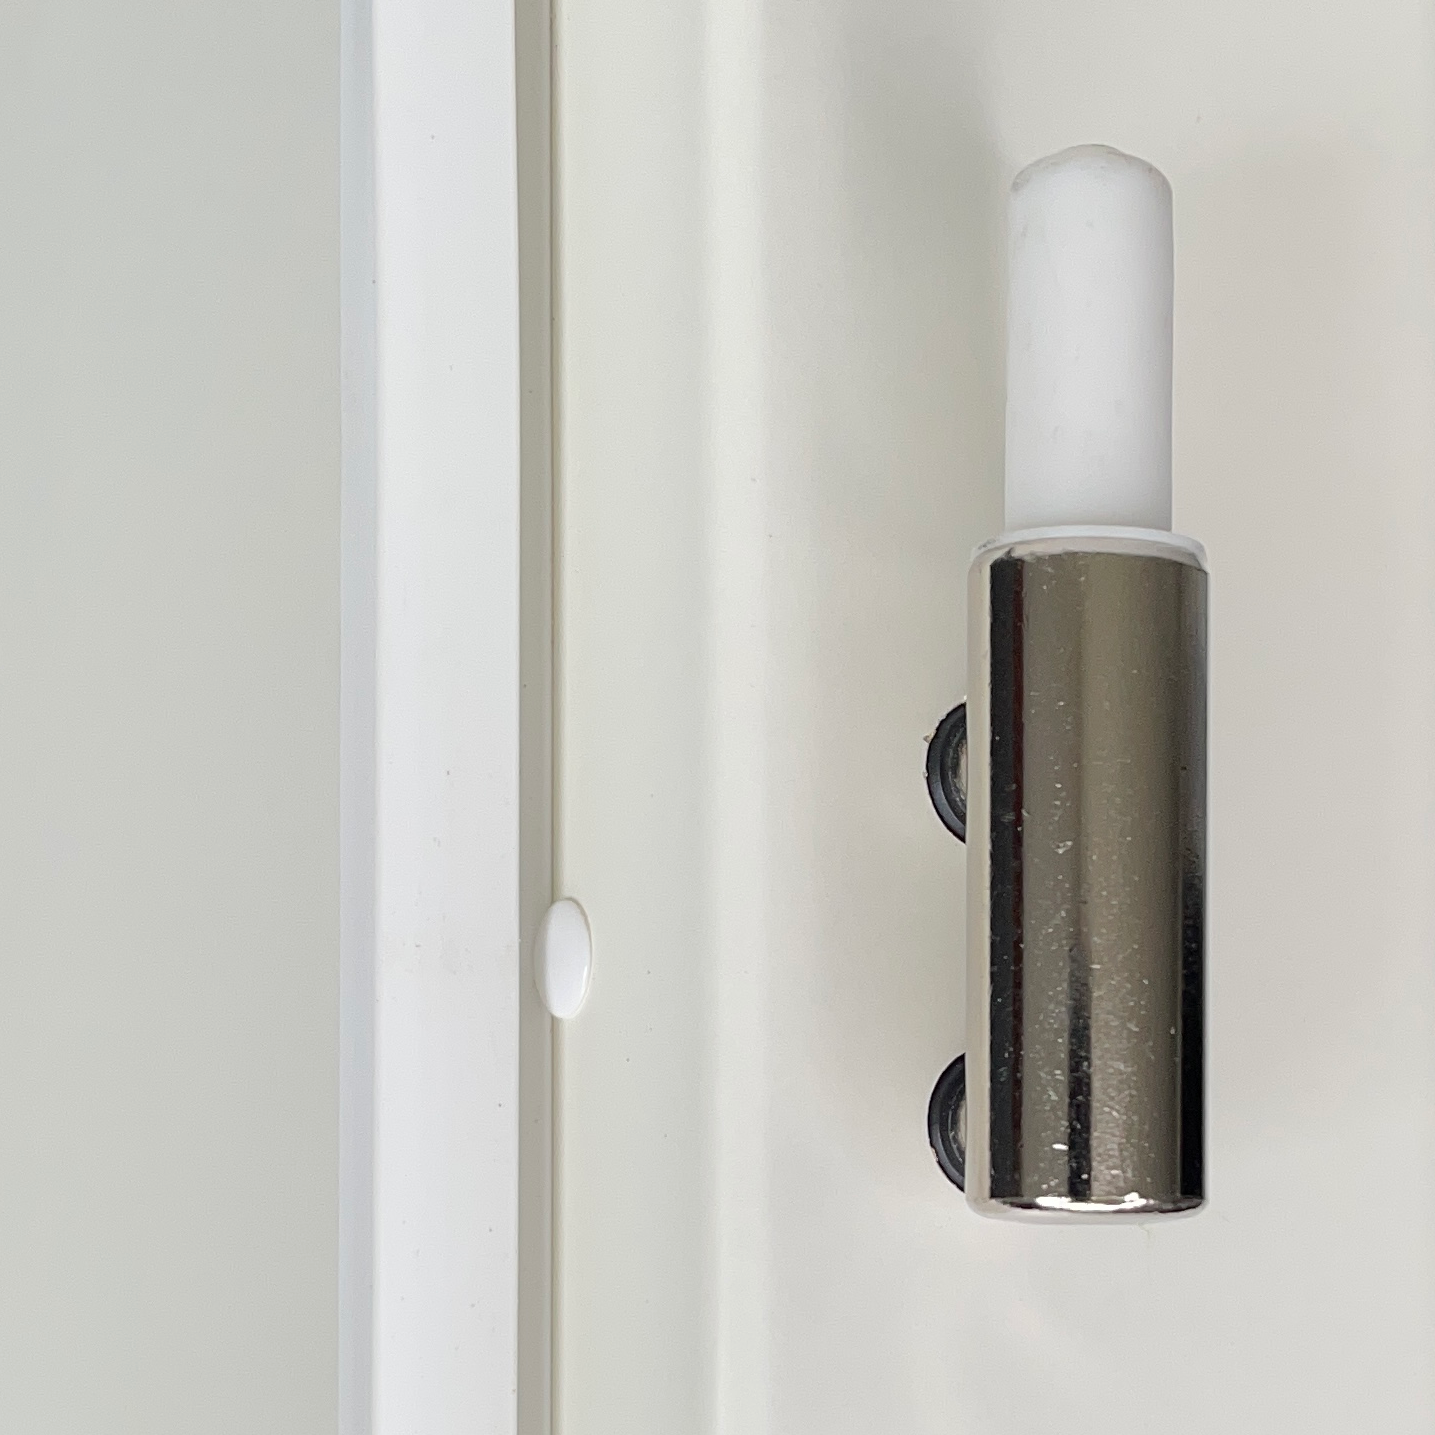 Zimmertür mit Zarge und Lichtausschnitt mit Sprossenrahmen soft-weiß 2 Kassetten Schweifbogen Rundkante - Modell Stiltür KS21LASPO